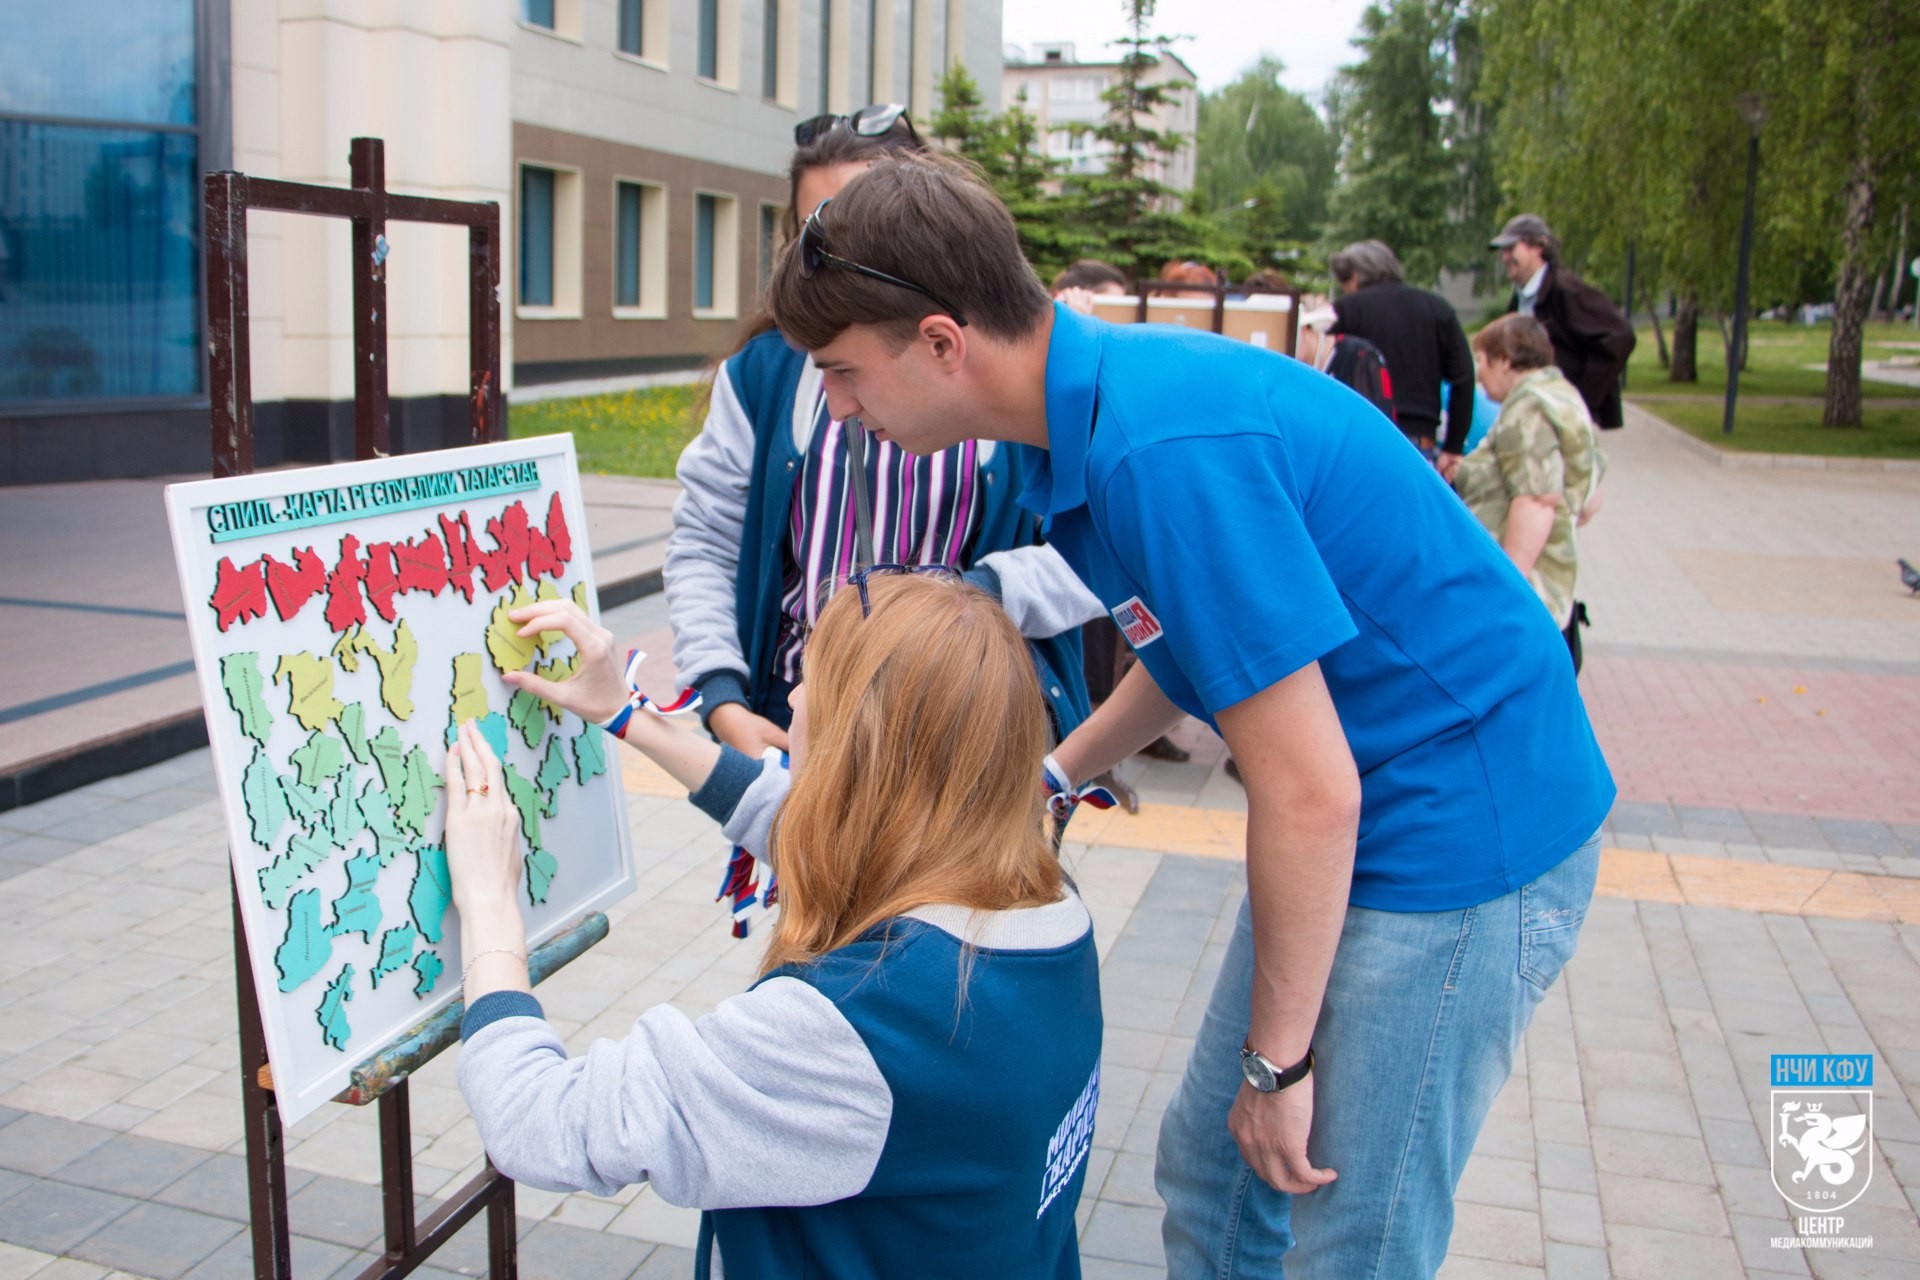 В День России студенческий актив НЧИ КФУ провёл акцию федеральной программы